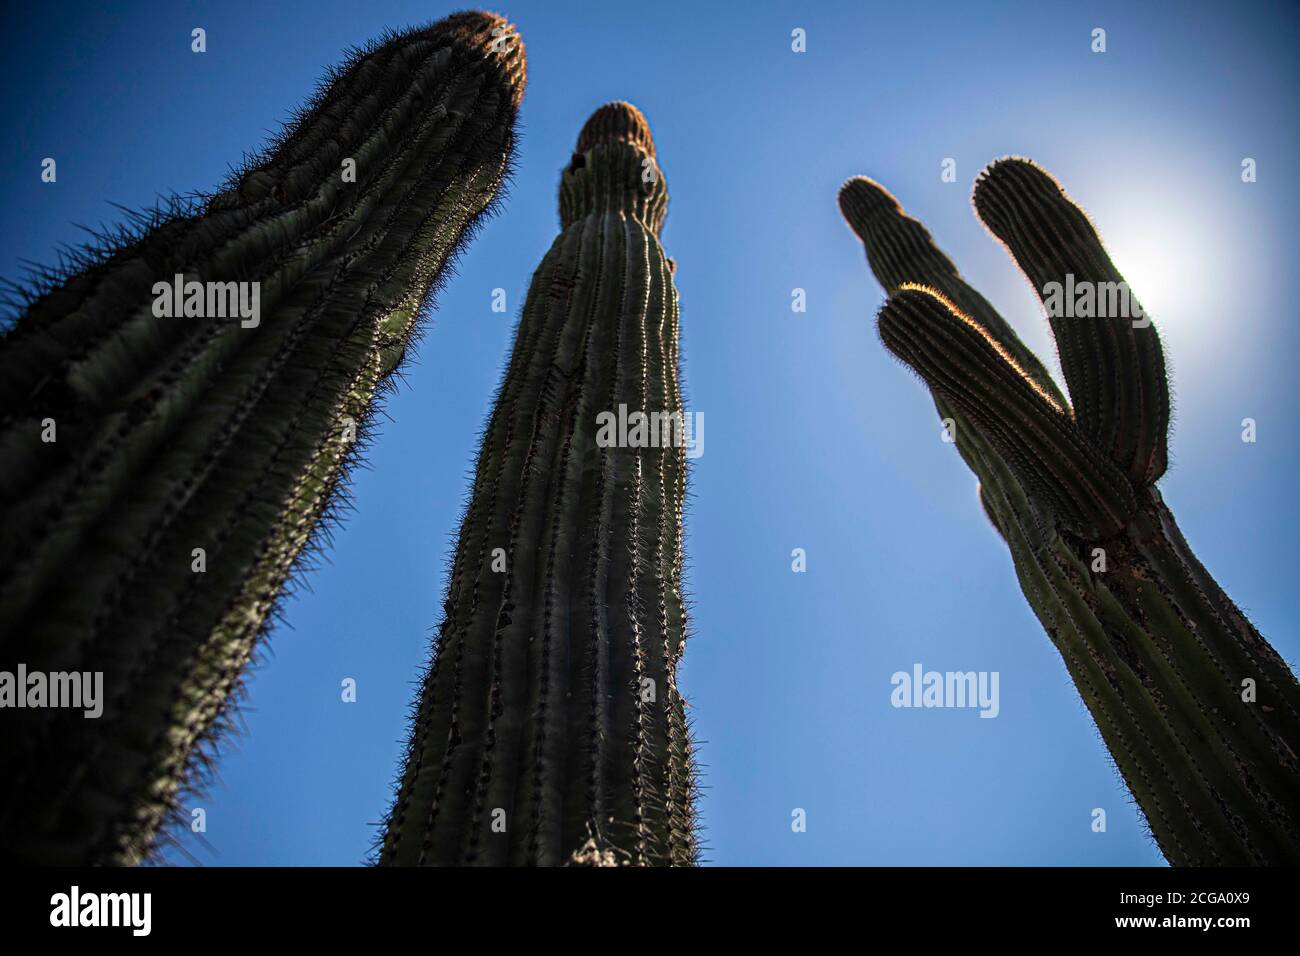 Cactus gigante mexicano, Pachycereus pringlei, cardón gigante mexicano o cactus elefante, especie de cactus nativa del noroeste de México en los estados de Baja California, Baja California Sur y Sonora. Desierto de Sonora en la sierra de la Reserva de la Biosfera El Pinacate y gran desierto de Altar en Sonora, Mexico. Patrimonio de la Humanidad por la UNESCO. Ecosistema tipico entre la frontera del desierto de Arizona  y Sonora. plantas y vegetacion escasa del desierto. Arido, seco, sequia. Se le conoce comúnmente como cardón, un nombre derivado de la palabra española cardo, que significa 'car Stock Photo